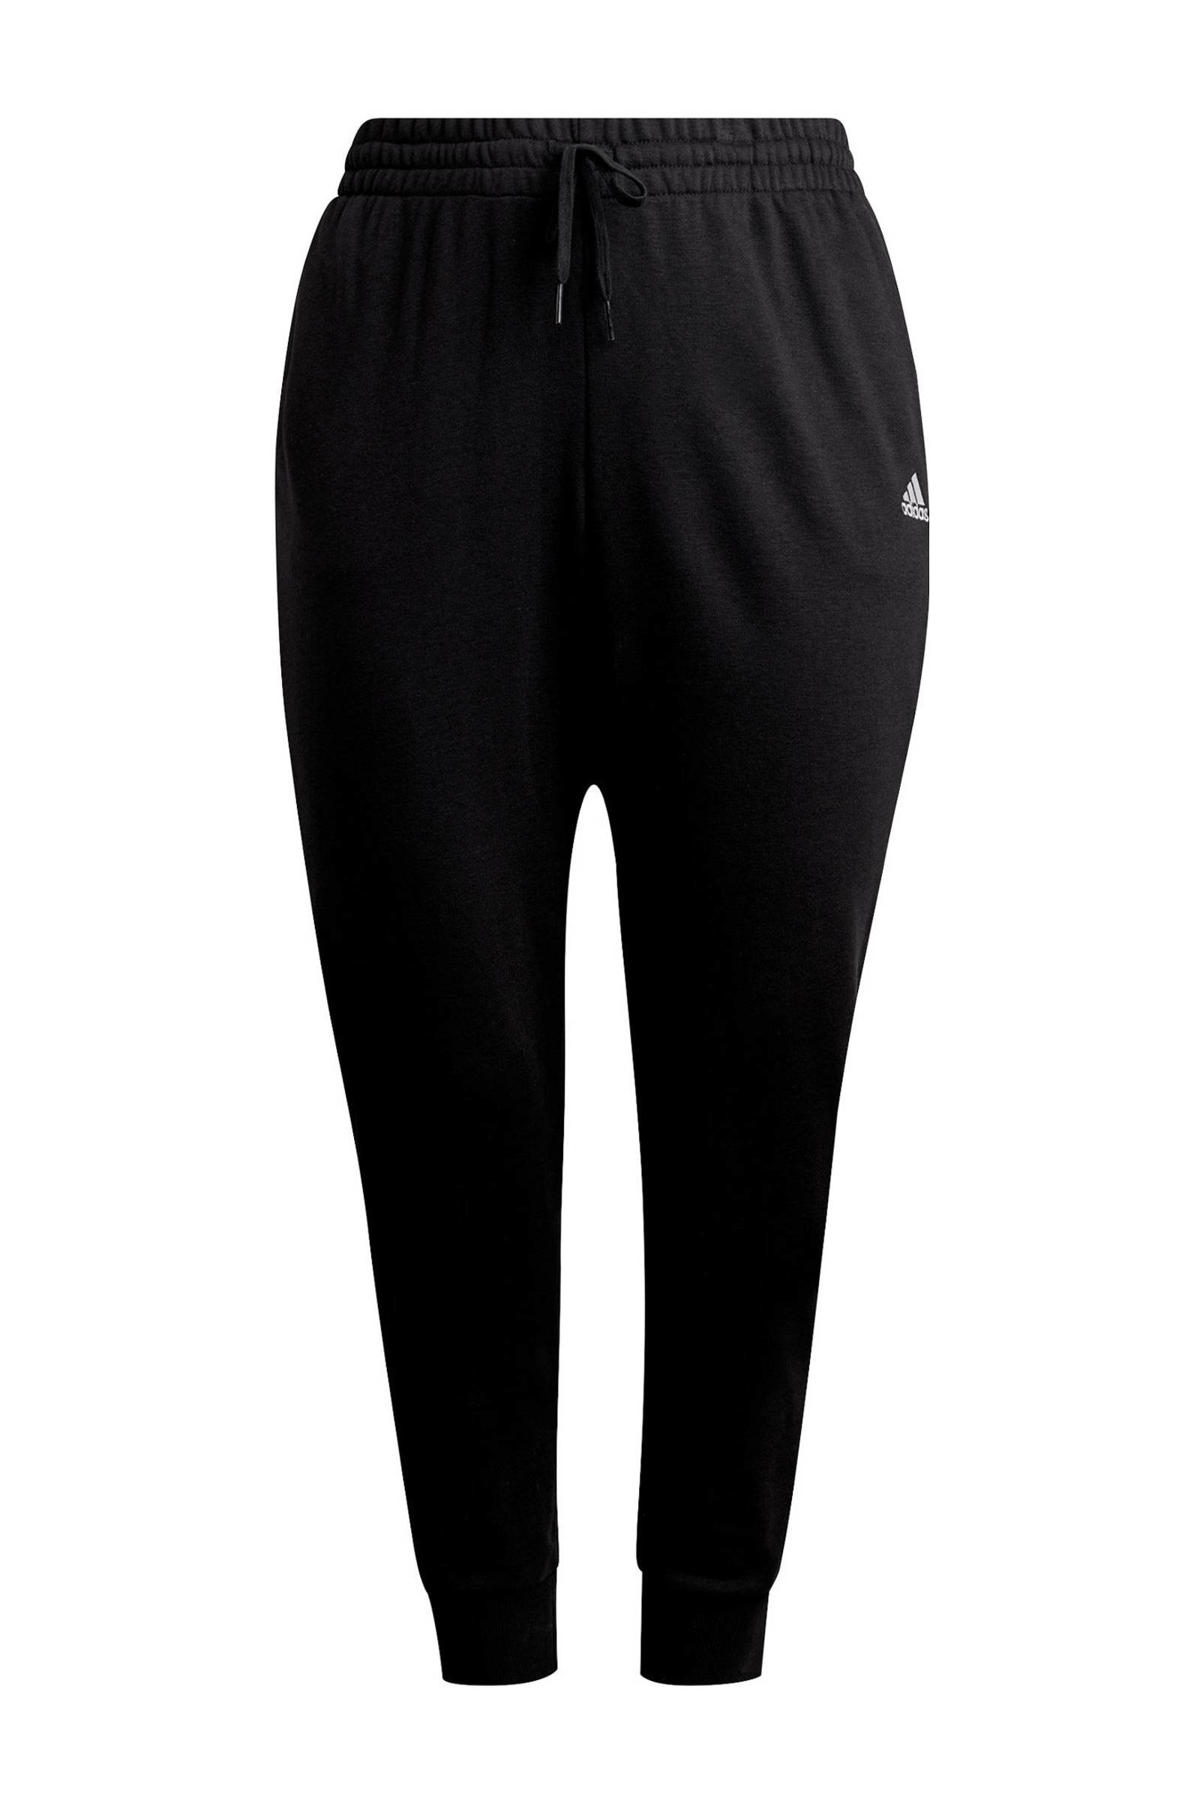 Dank u voor uw hulp laten vallen feedback adidas Performance Plus Size joggingbroek zwart/wit | wehkamp